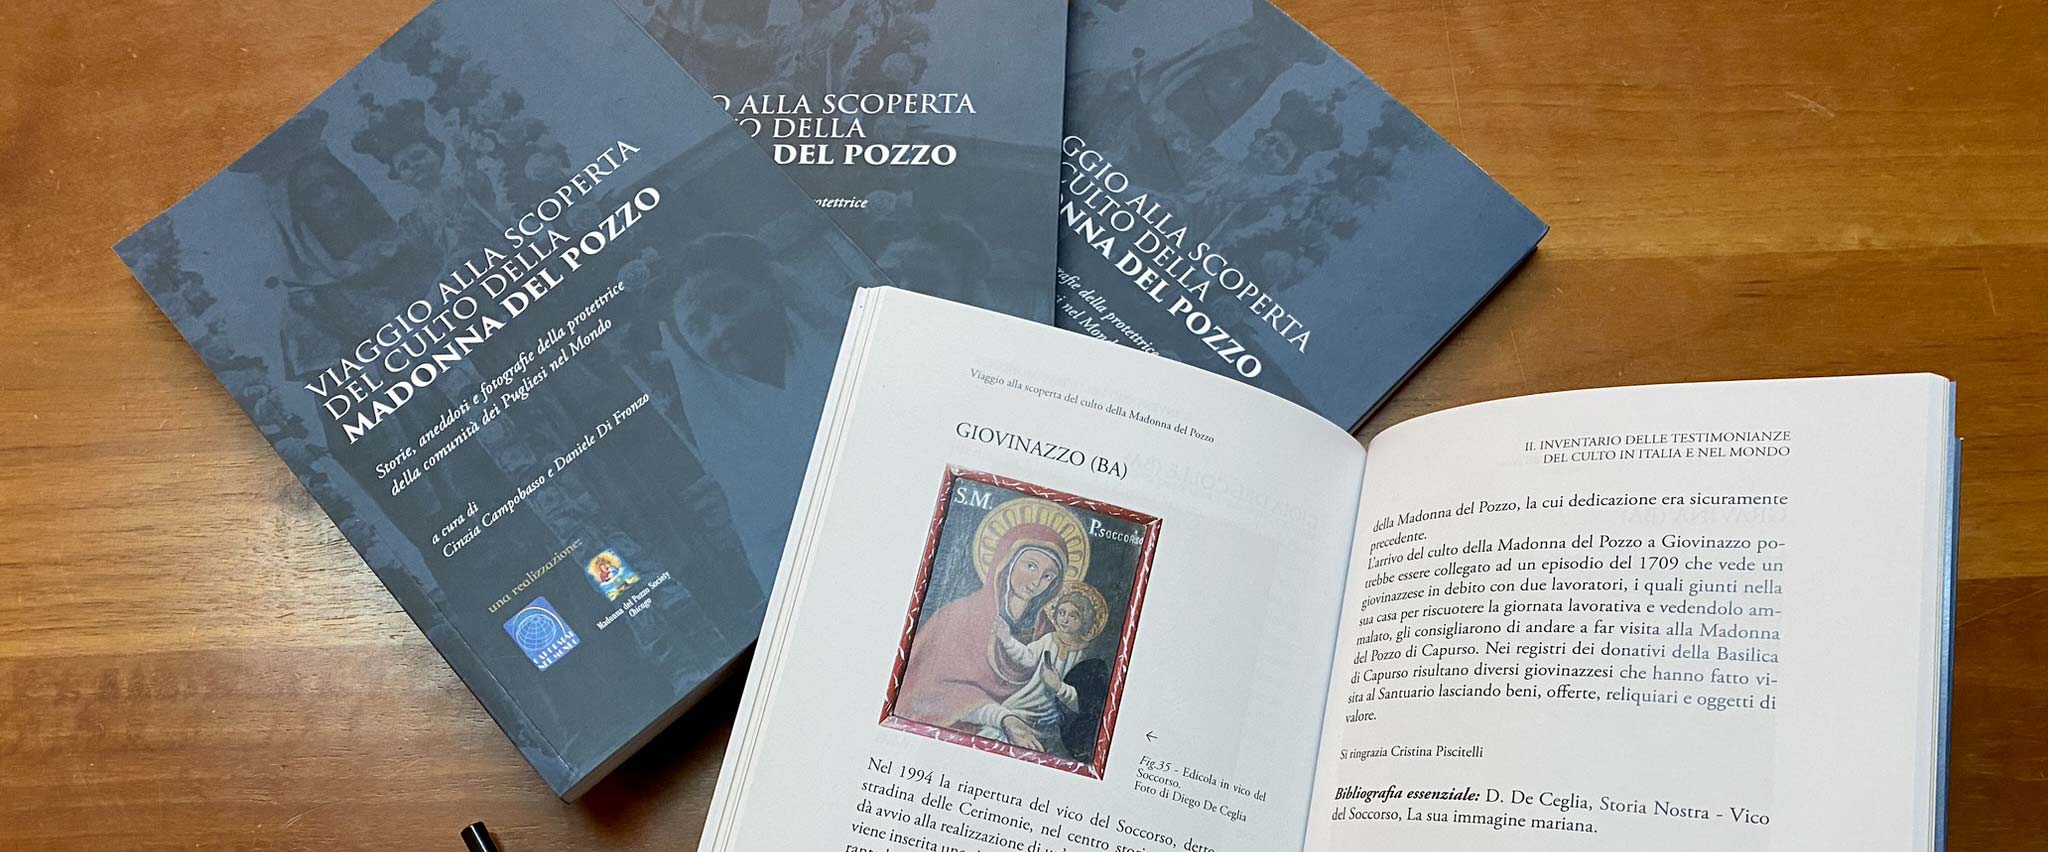 Un volume che racconta il culto della Madonna del Pozzo in Italia e nel Mondo. Dopo gli Stati Uniti, la presentazione a Capurso